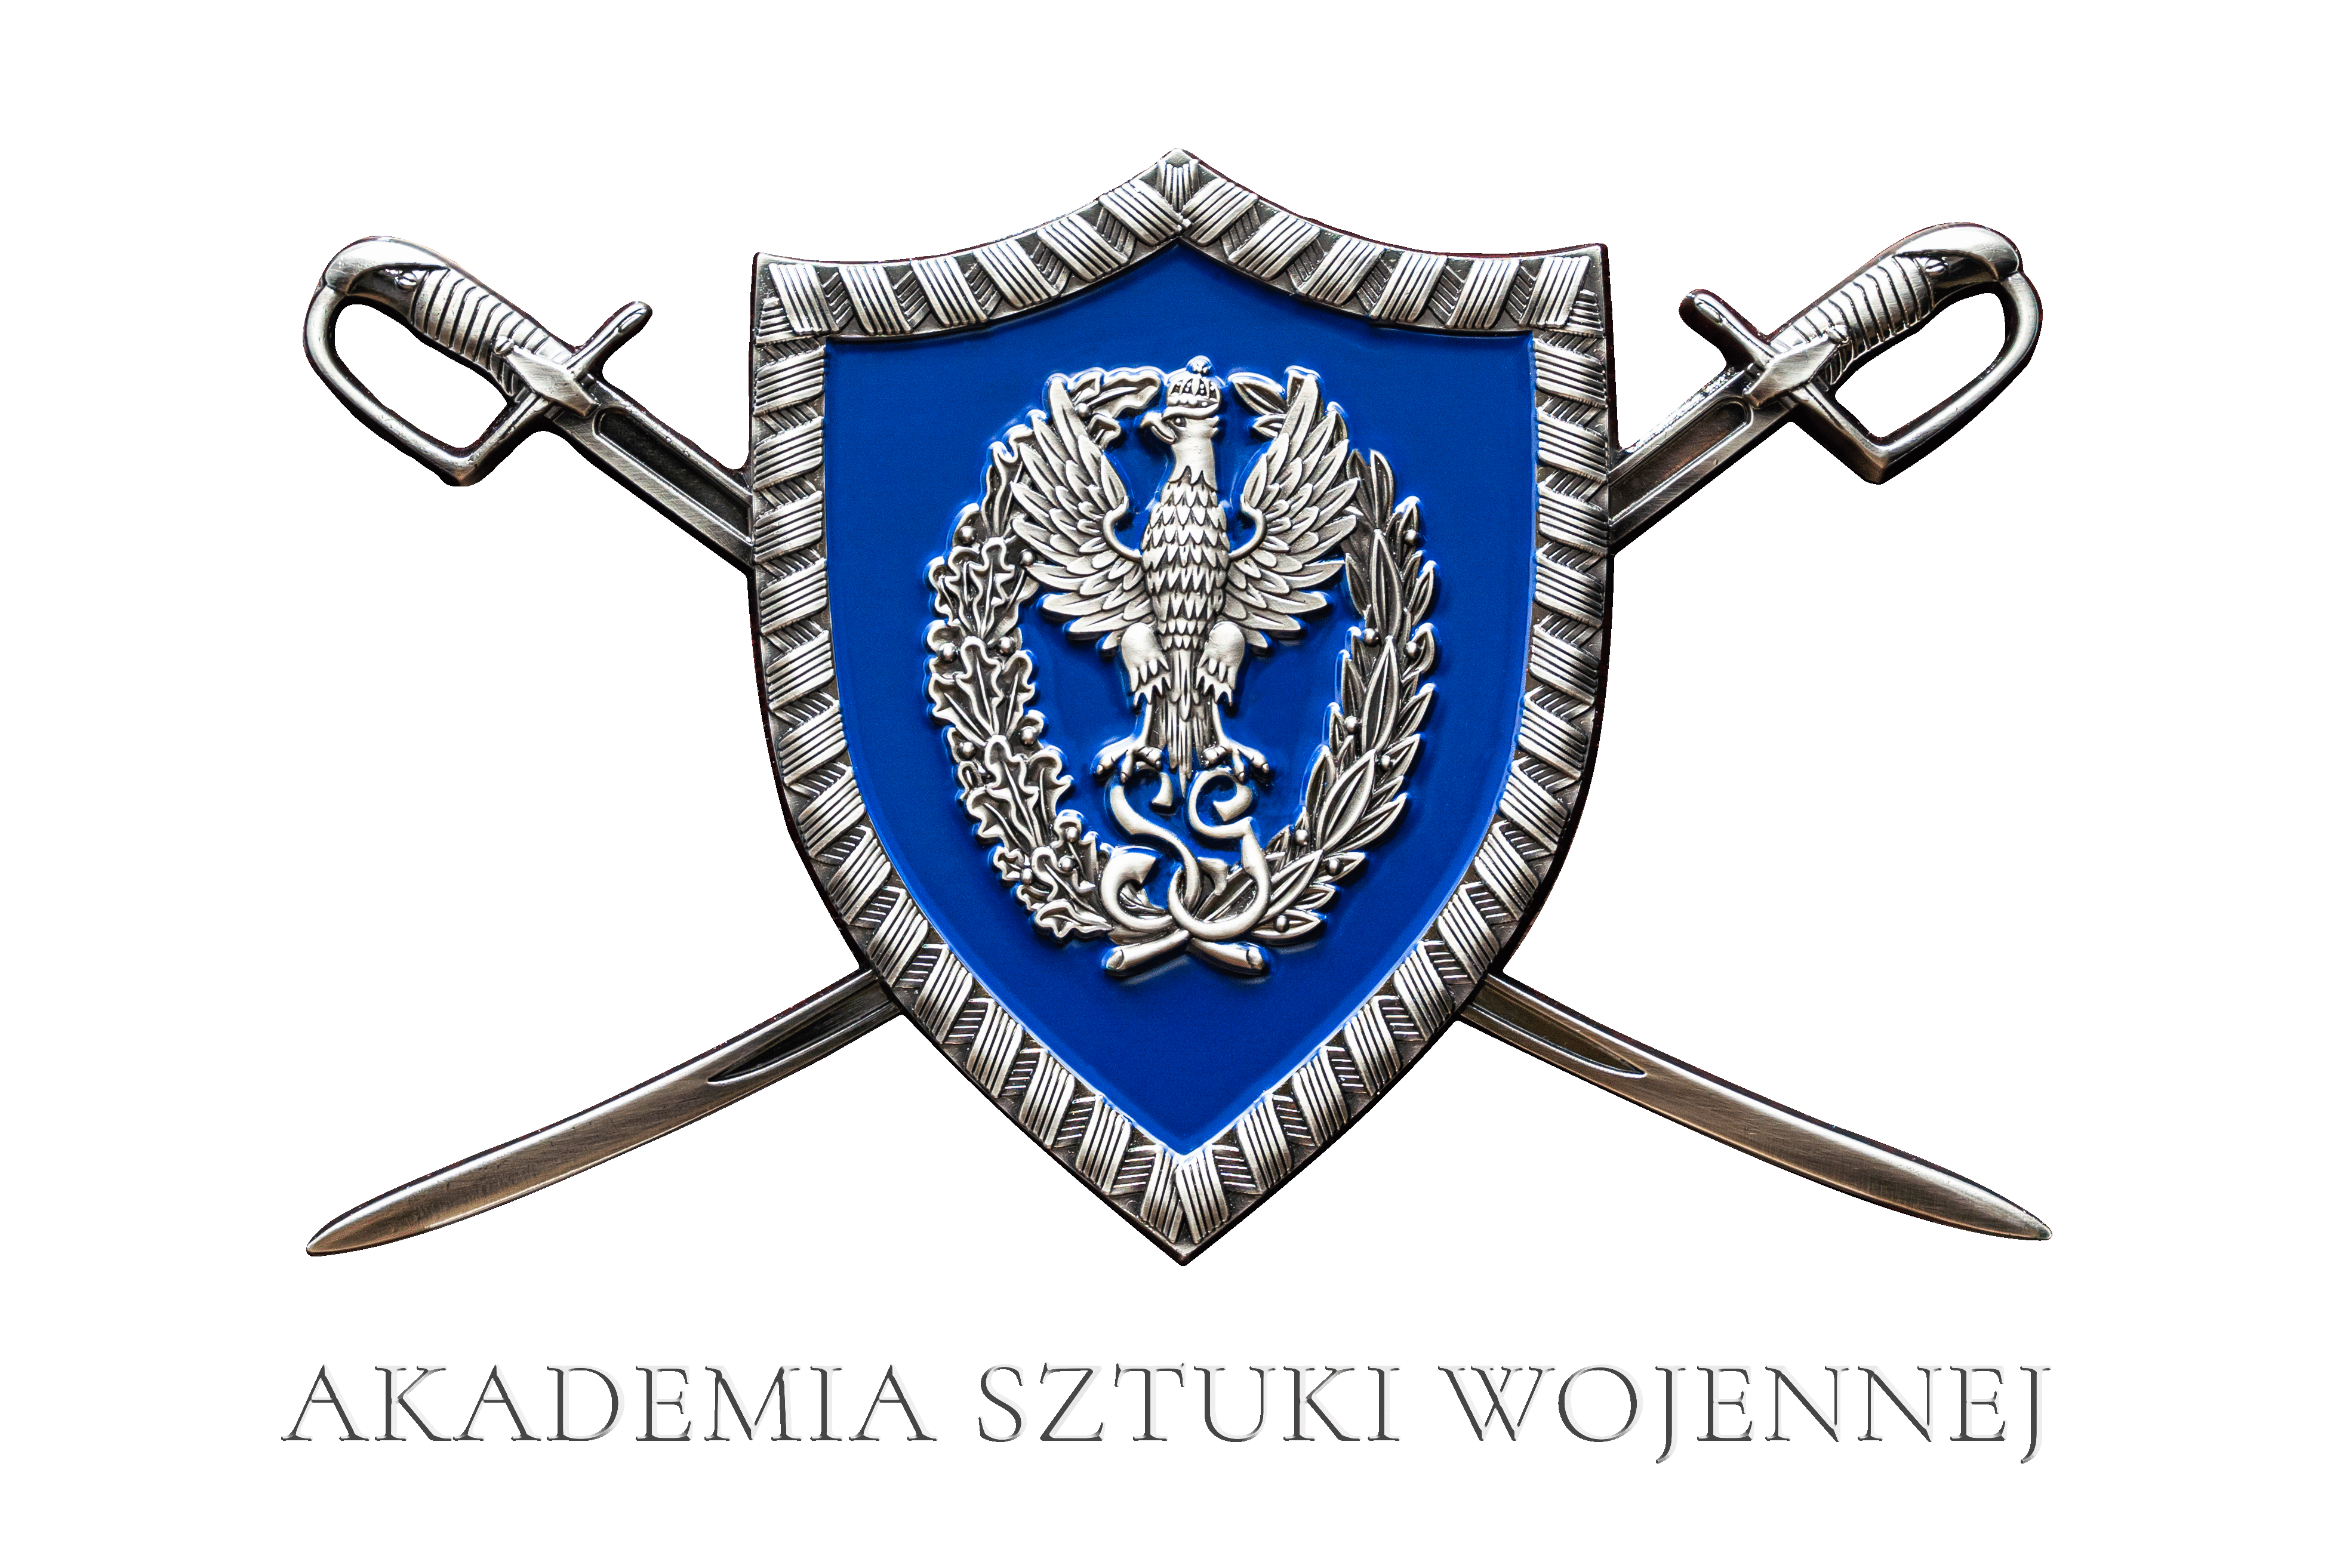 Logo Akademia Sztuki Wojennej (ASzWoj) w Warszawie <small>(Uczelnia publiczna)</small>